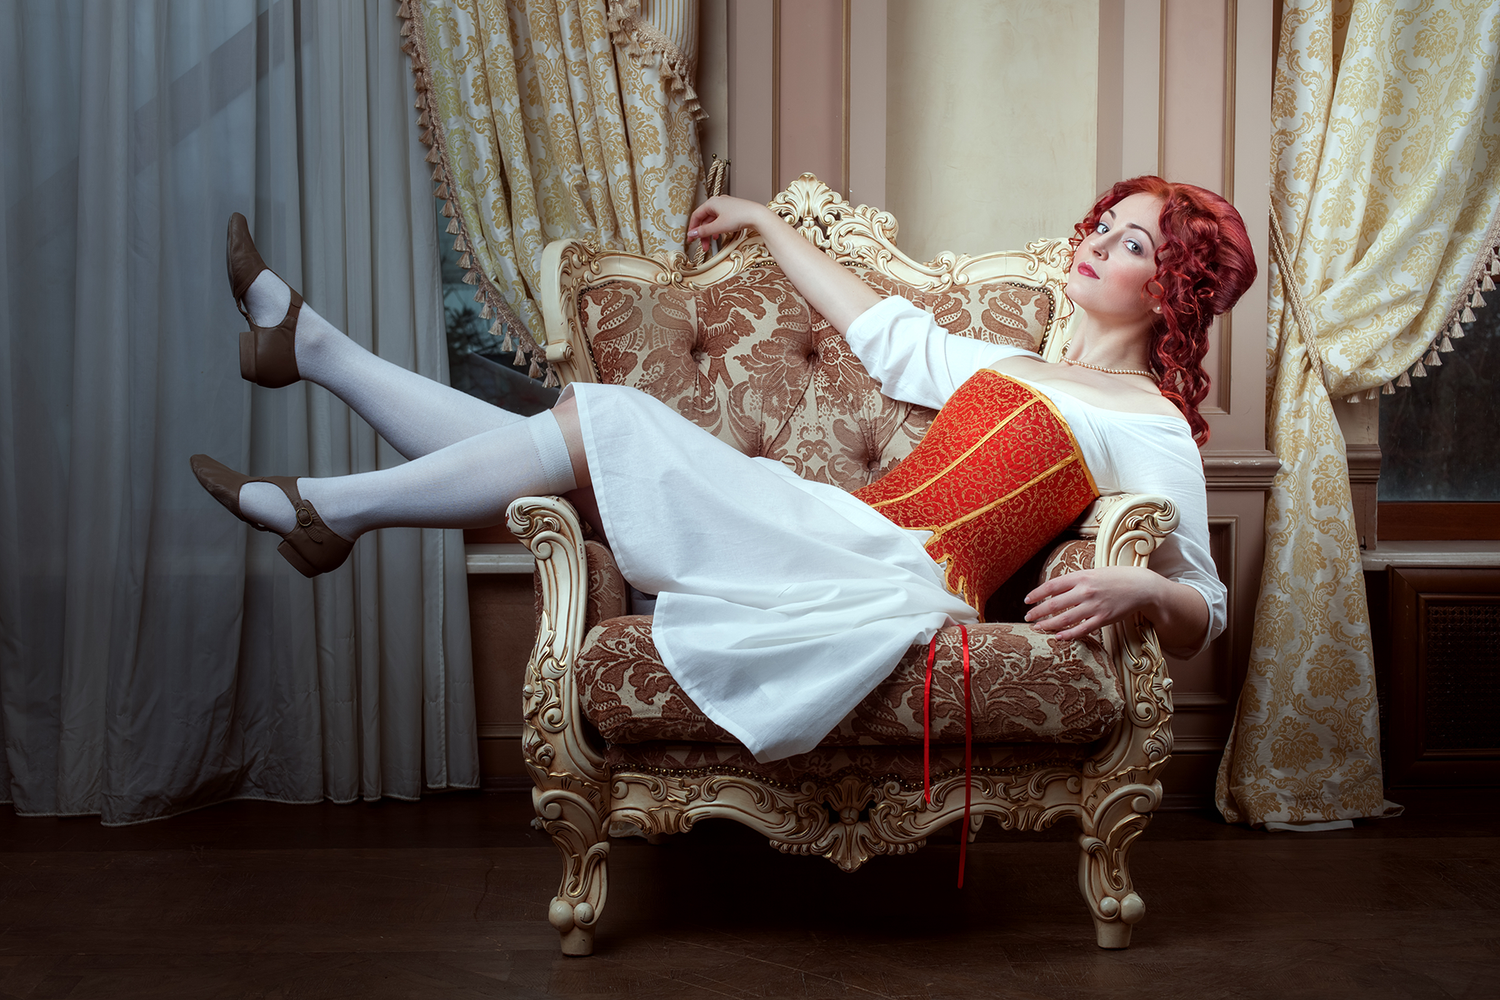 Femme assise dans un fauteuil portant un corset rouge